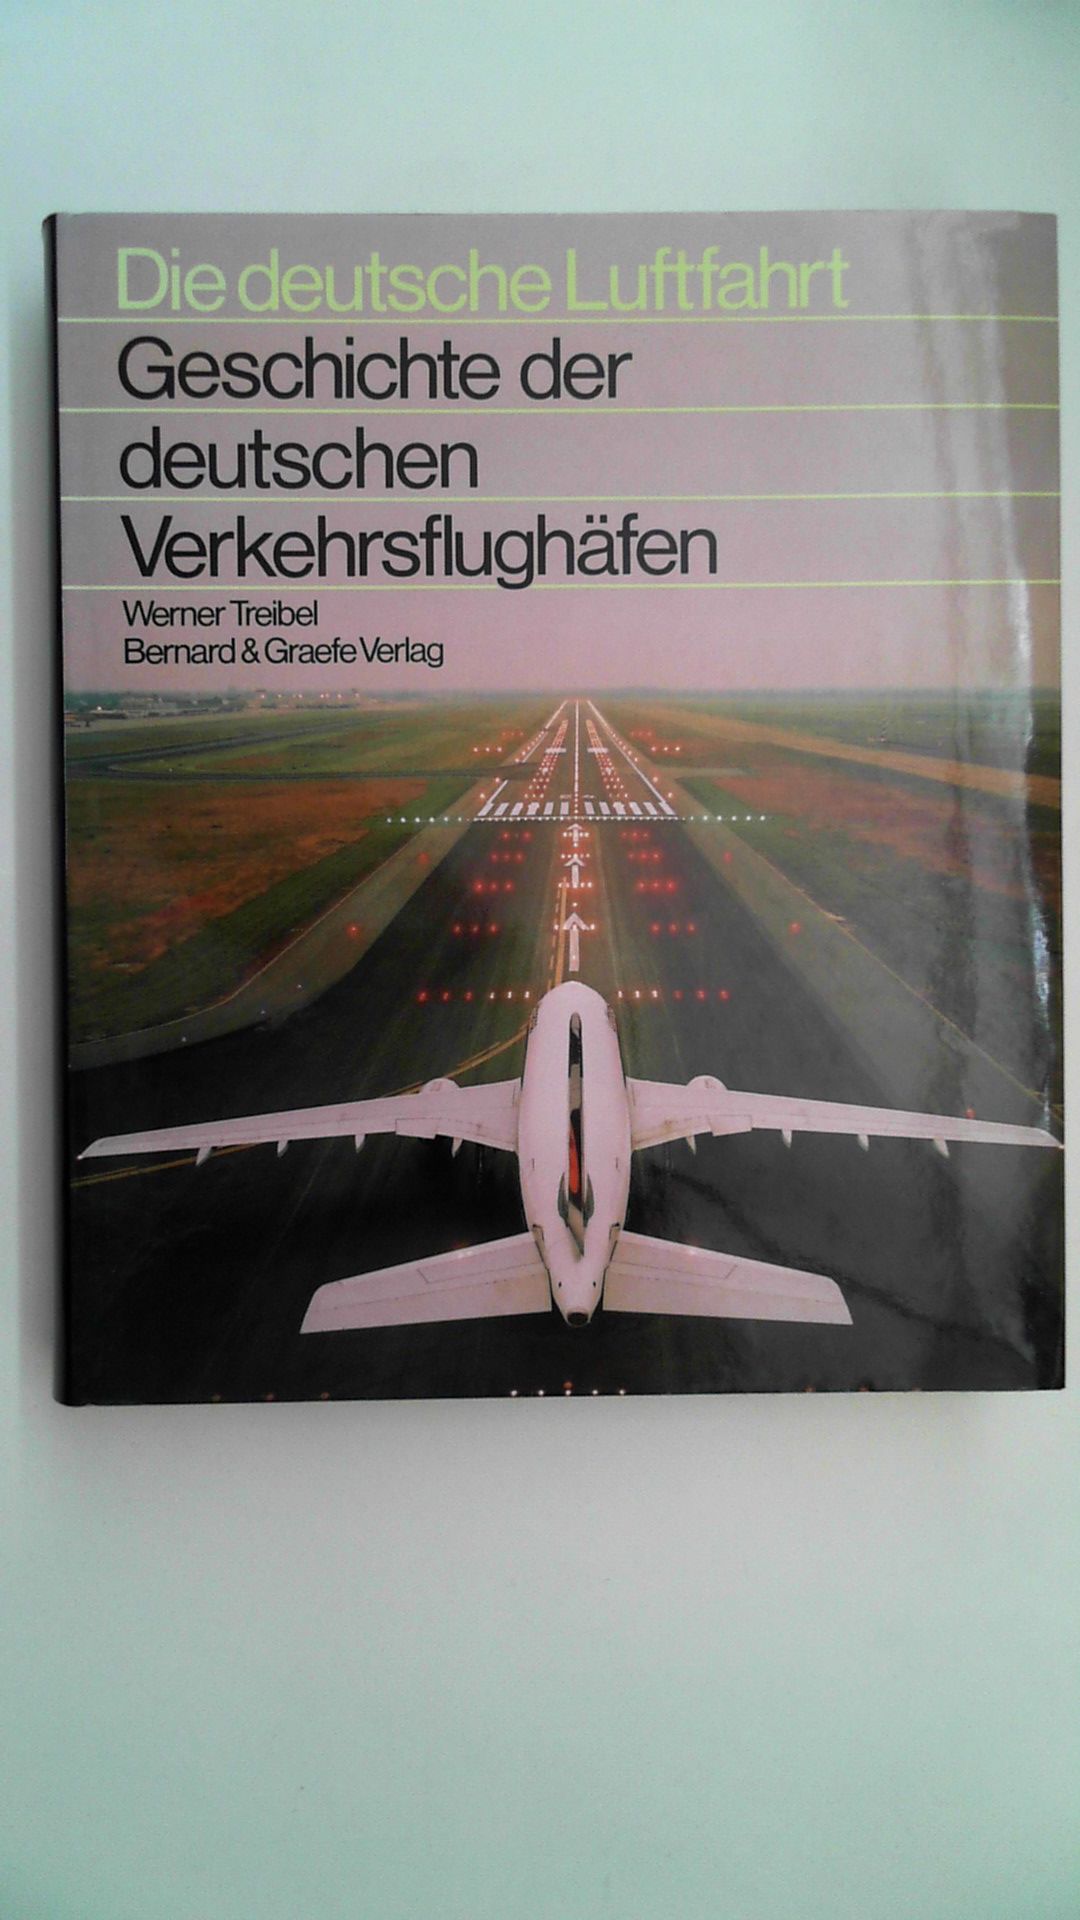 Die deutsche Luftfahrt - Geschichte der deutschen Verkehrsflughäfen, - Werner Treibel